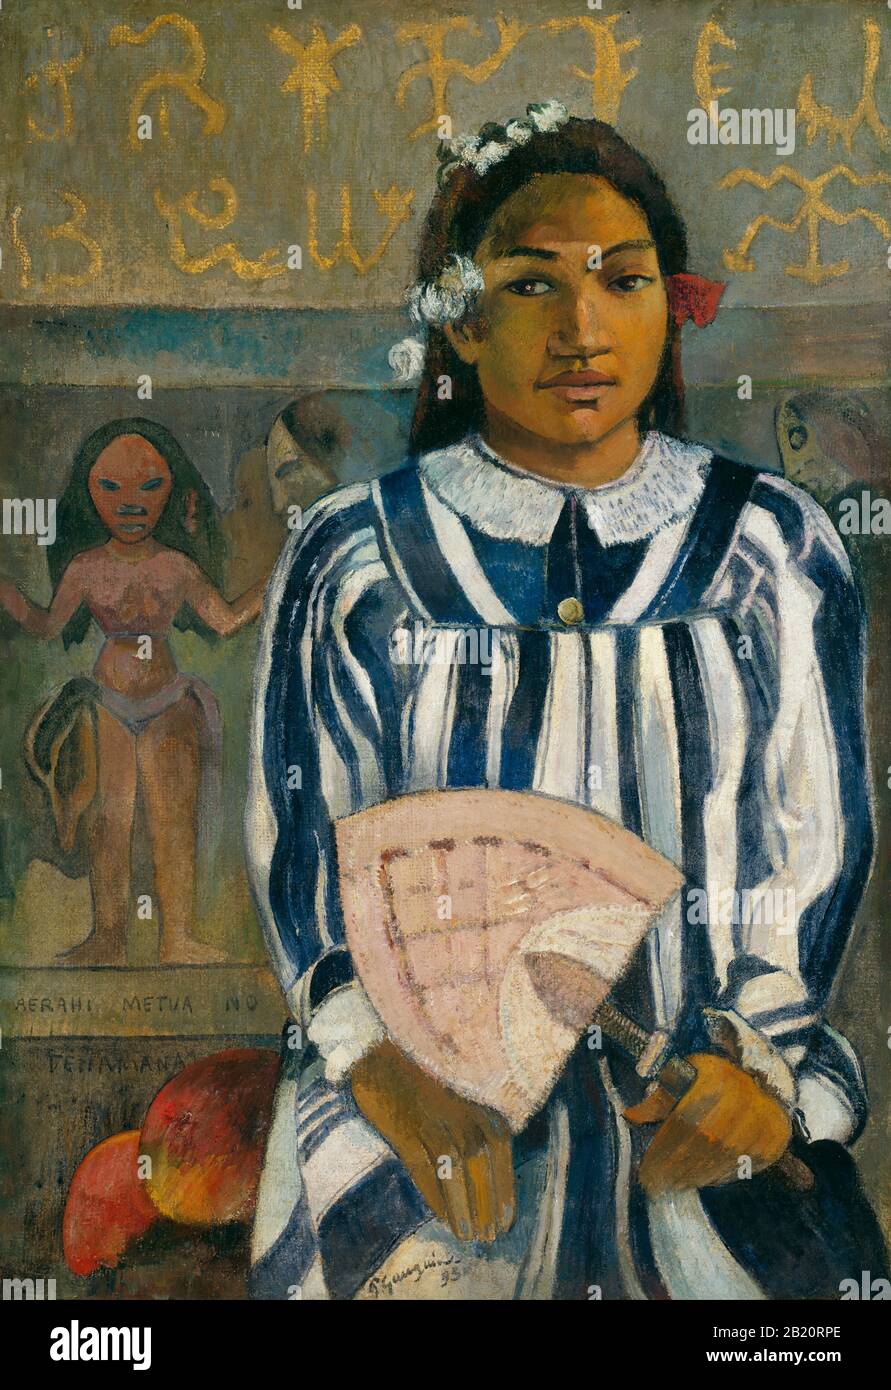 Tehamana Hat Viele Eltern (Mea rahi metua no Teha'amana) (1893) Gemälde des 19. Jahrhunderts von Paul Gauguin - Sehr hohe Auflösung und Qualitätsbild Stockfoto